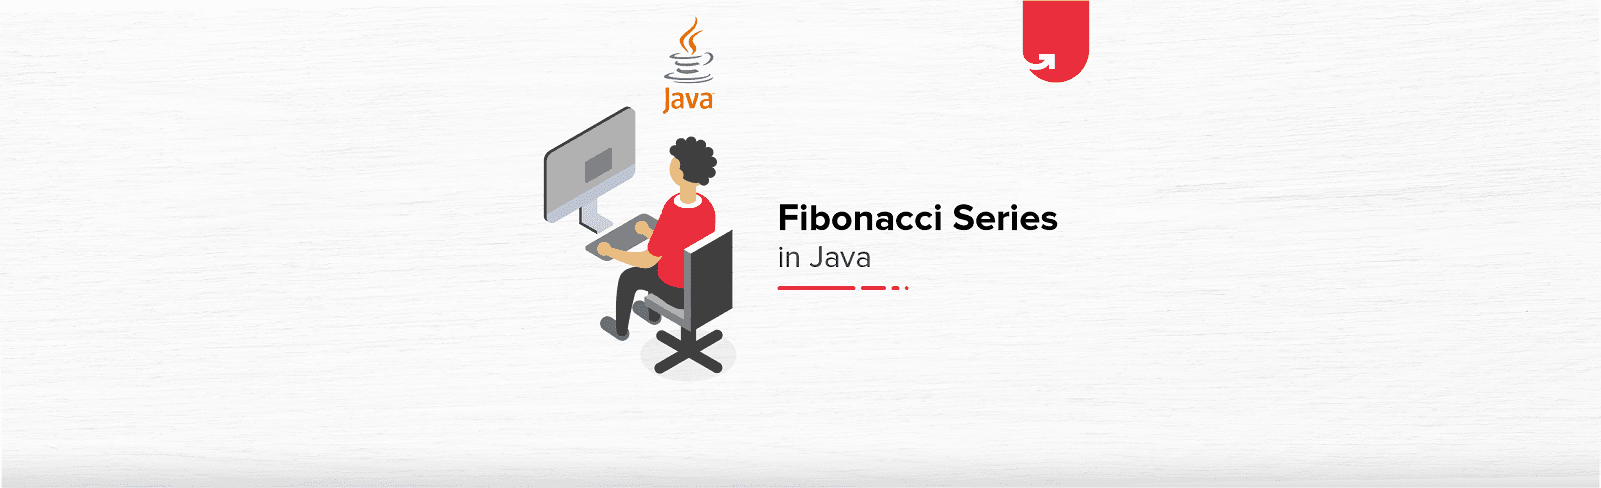 Fibonacci Series in Java: How to Write &#038; Display Fibonnaci in Java